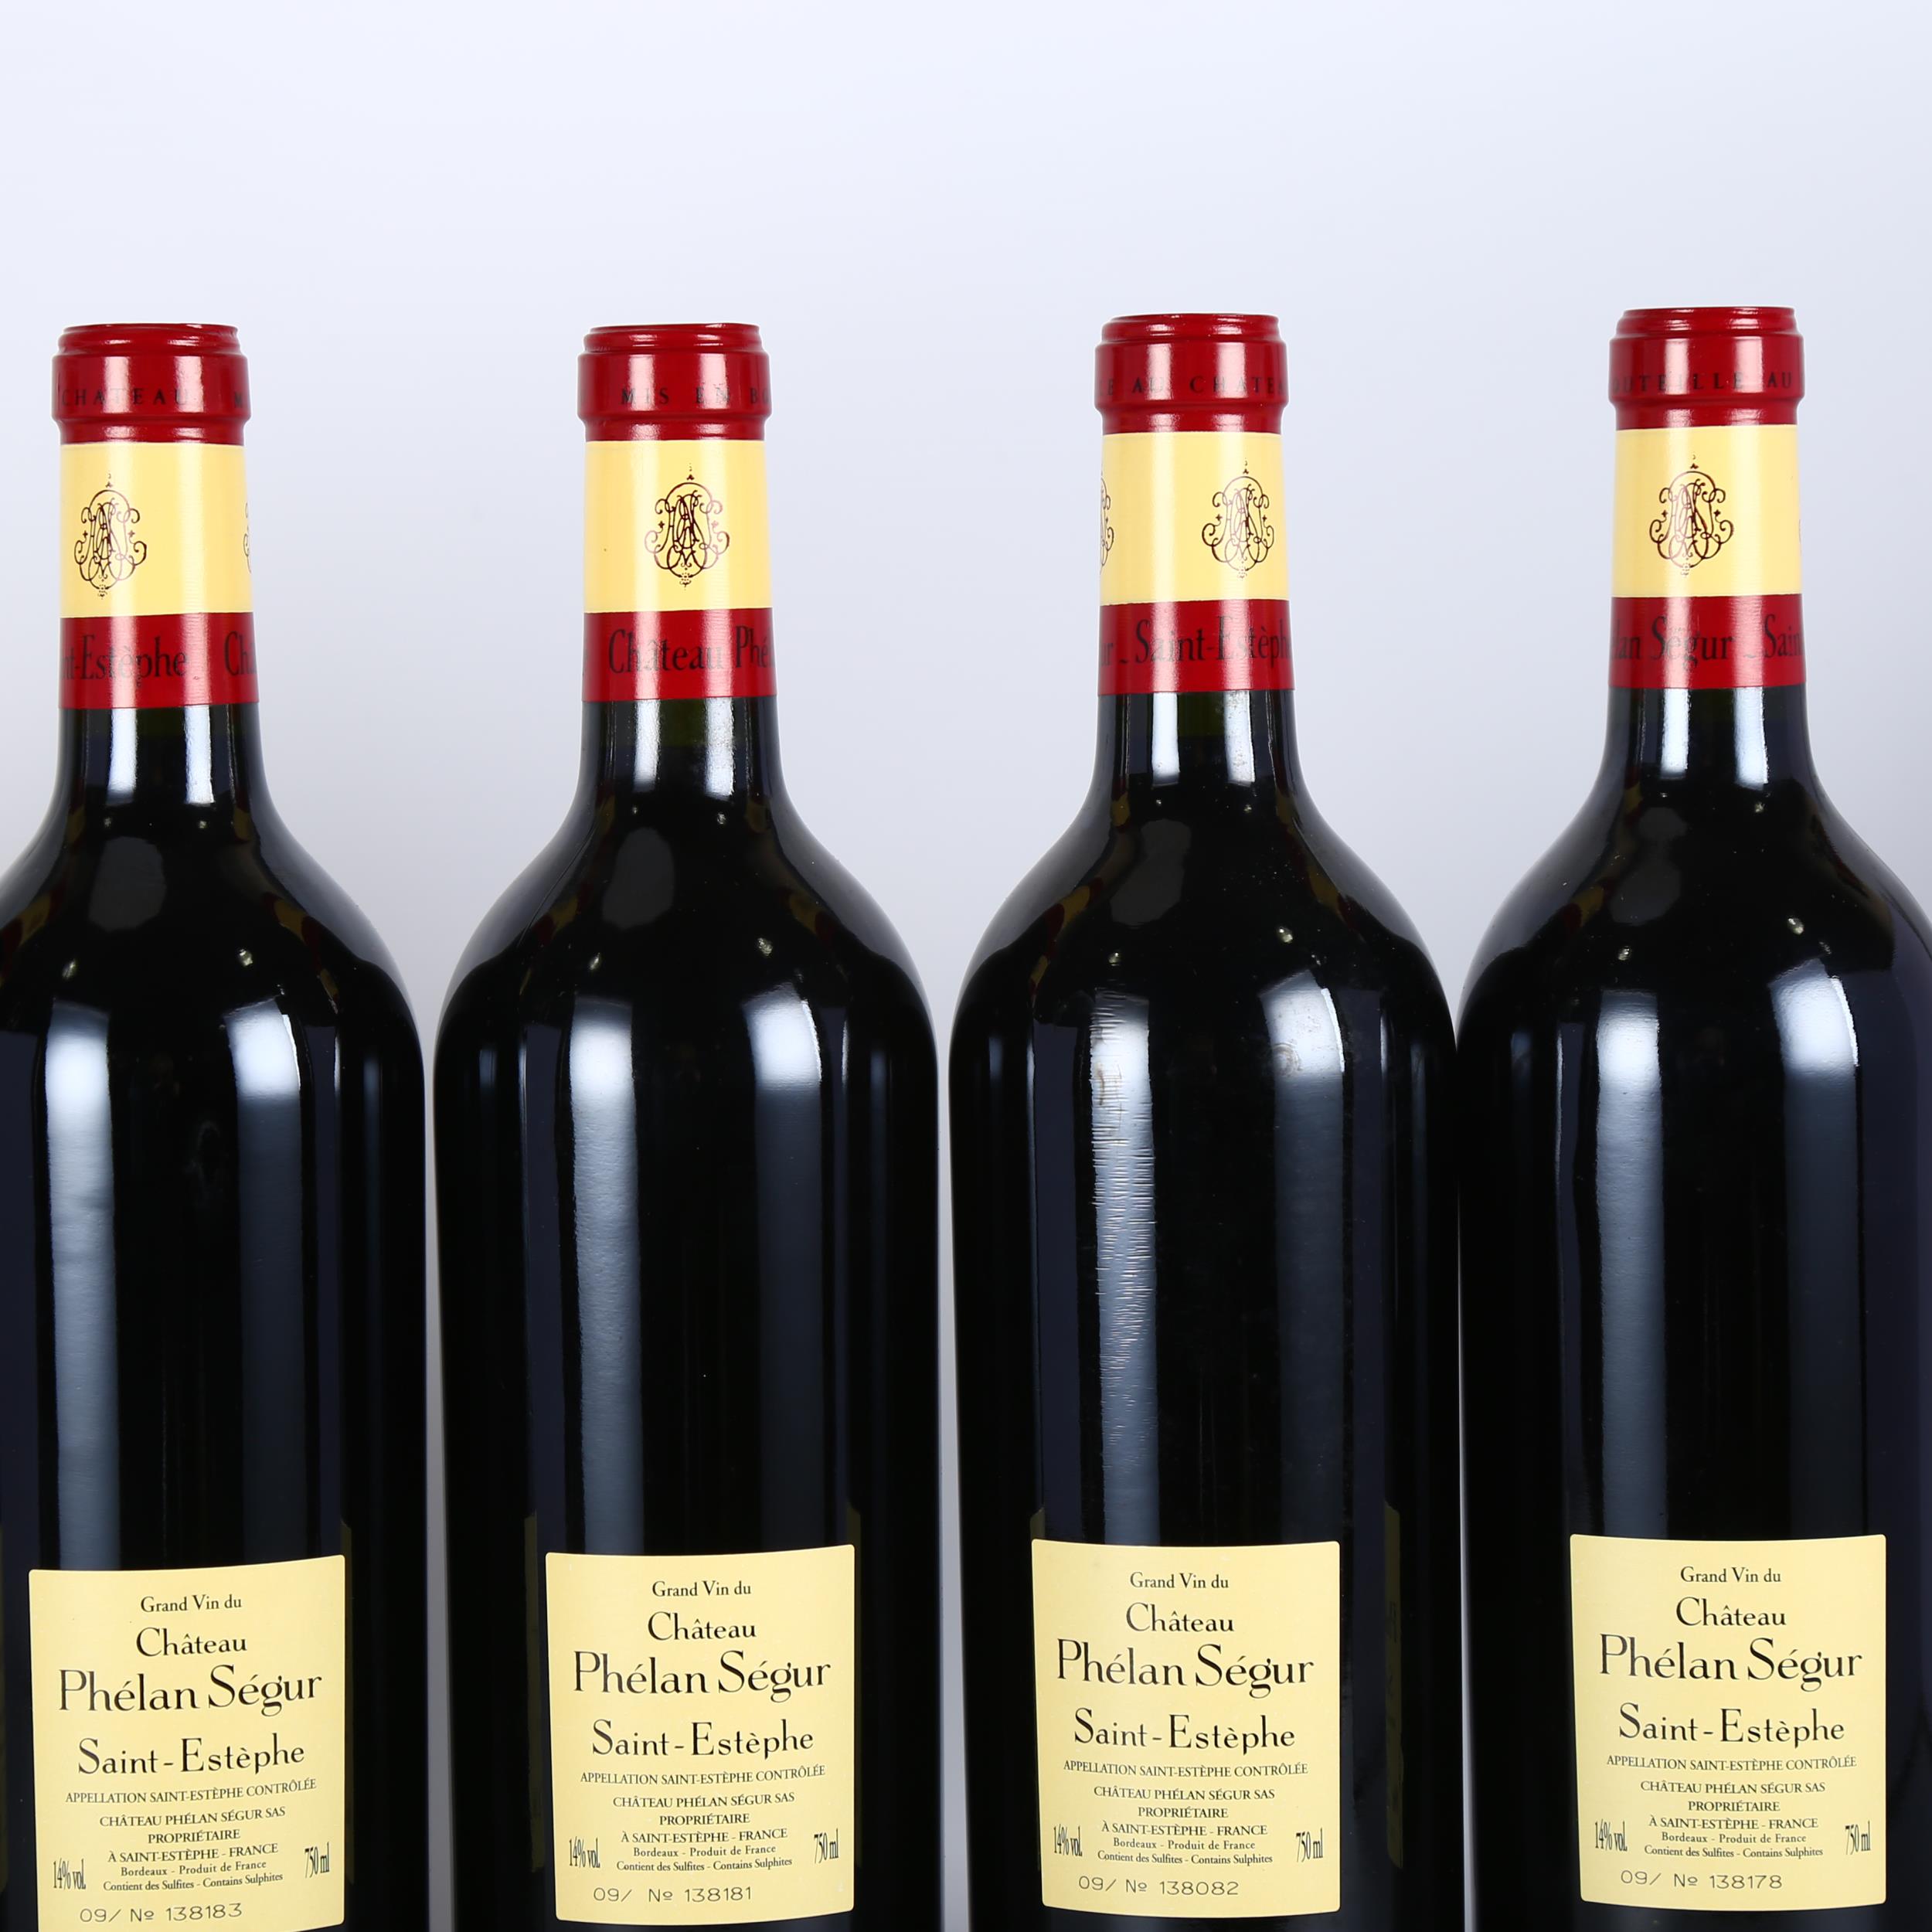 Chateau Phelan Segur 2009, St Estephe x 6 bottles. 95 points Vinous. 93 points Wine Advocate. - Image 3 of 3